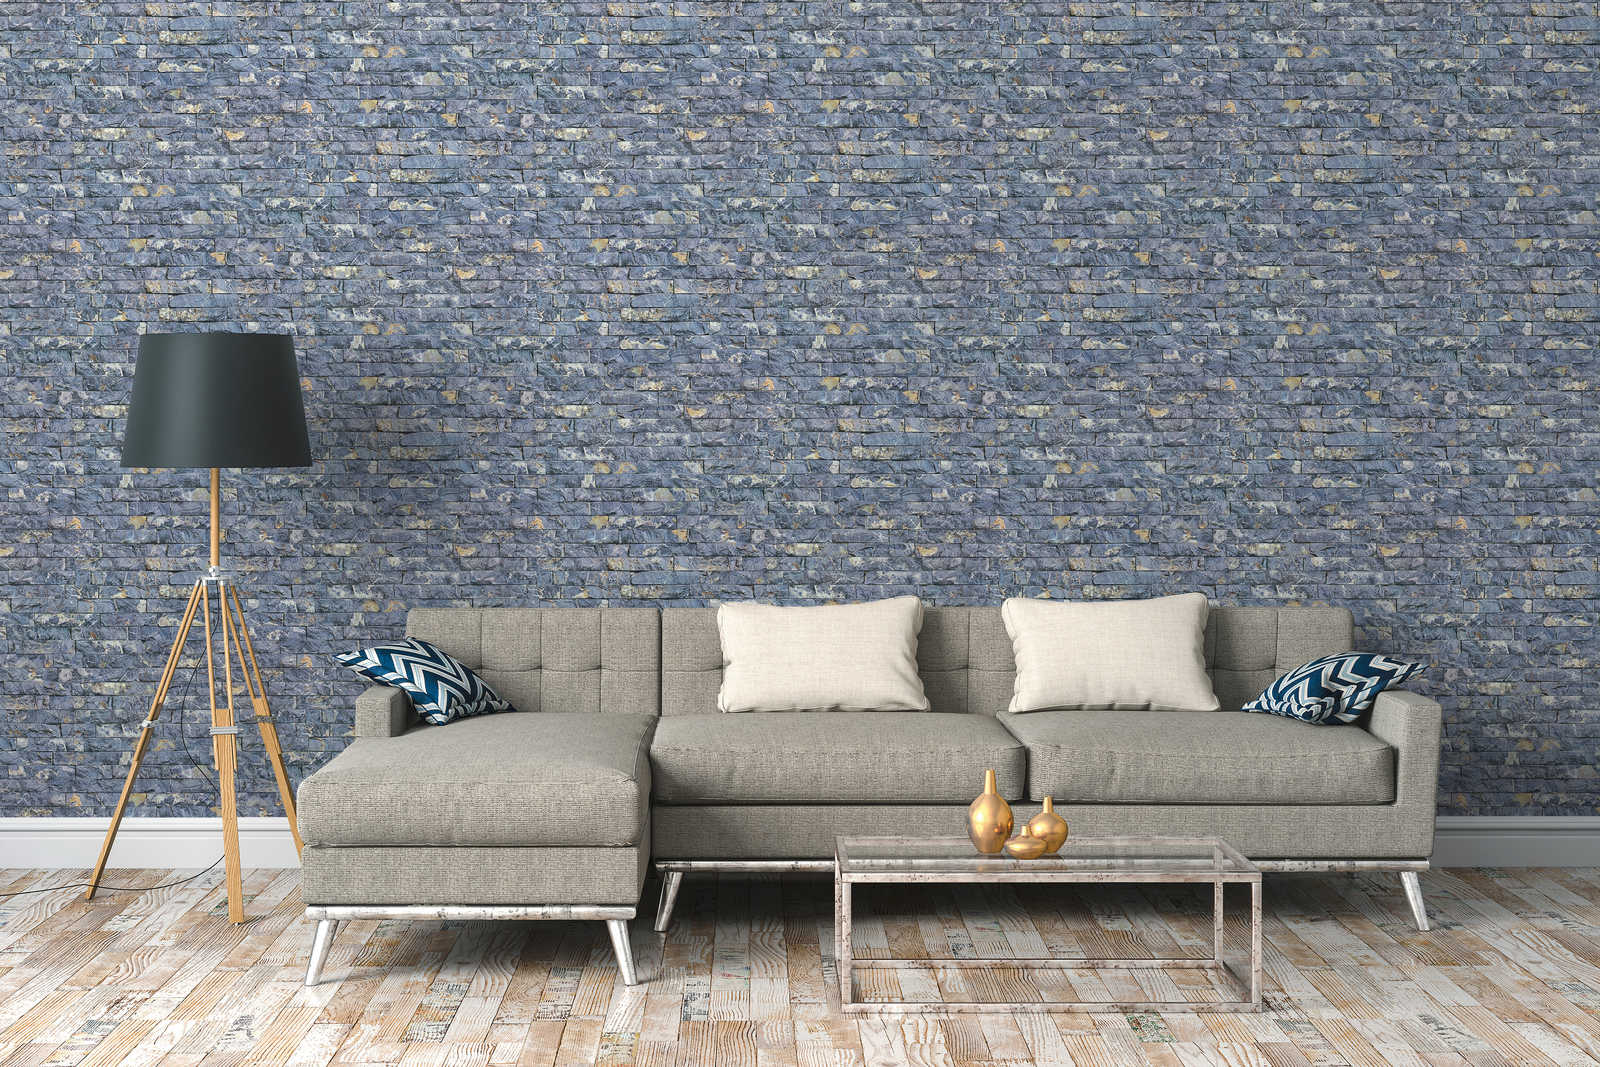             Tapete Steinoptik mit 3D Mauerwerk Quarzstein – Blau, Grau
        